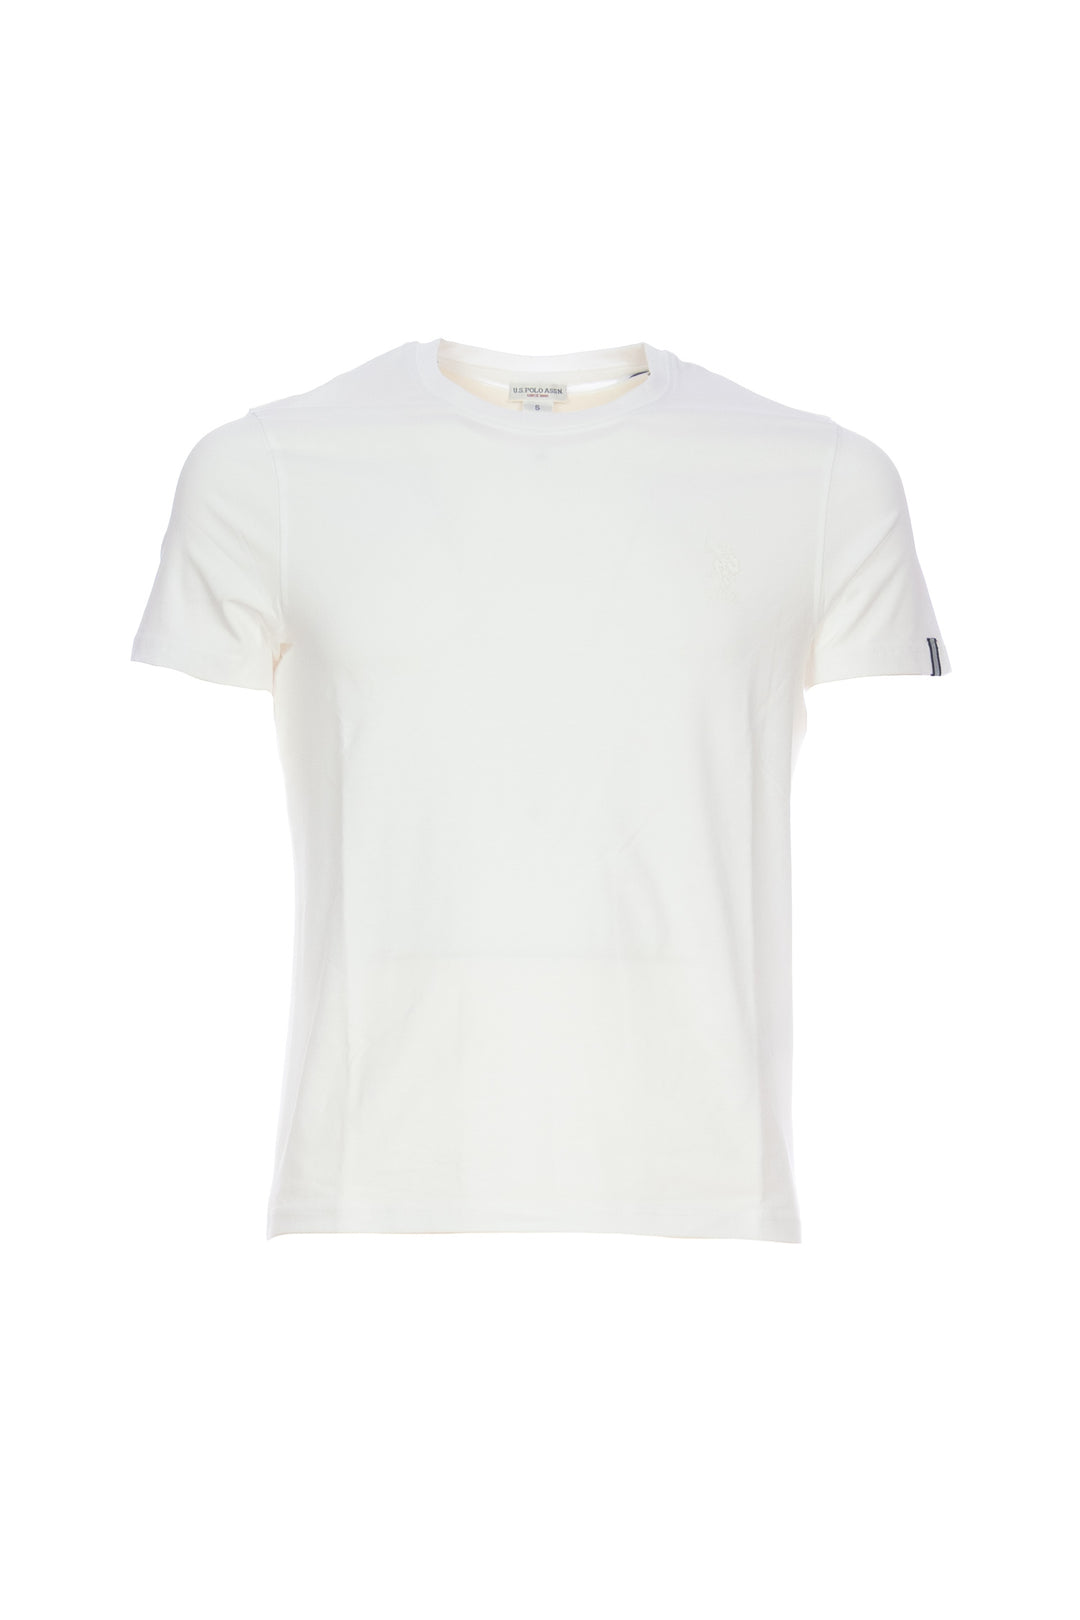 U.S. POLO ASSN. T-shirt bianca in cotone stretch con logo USPA sul petto - Mancinelli 1954